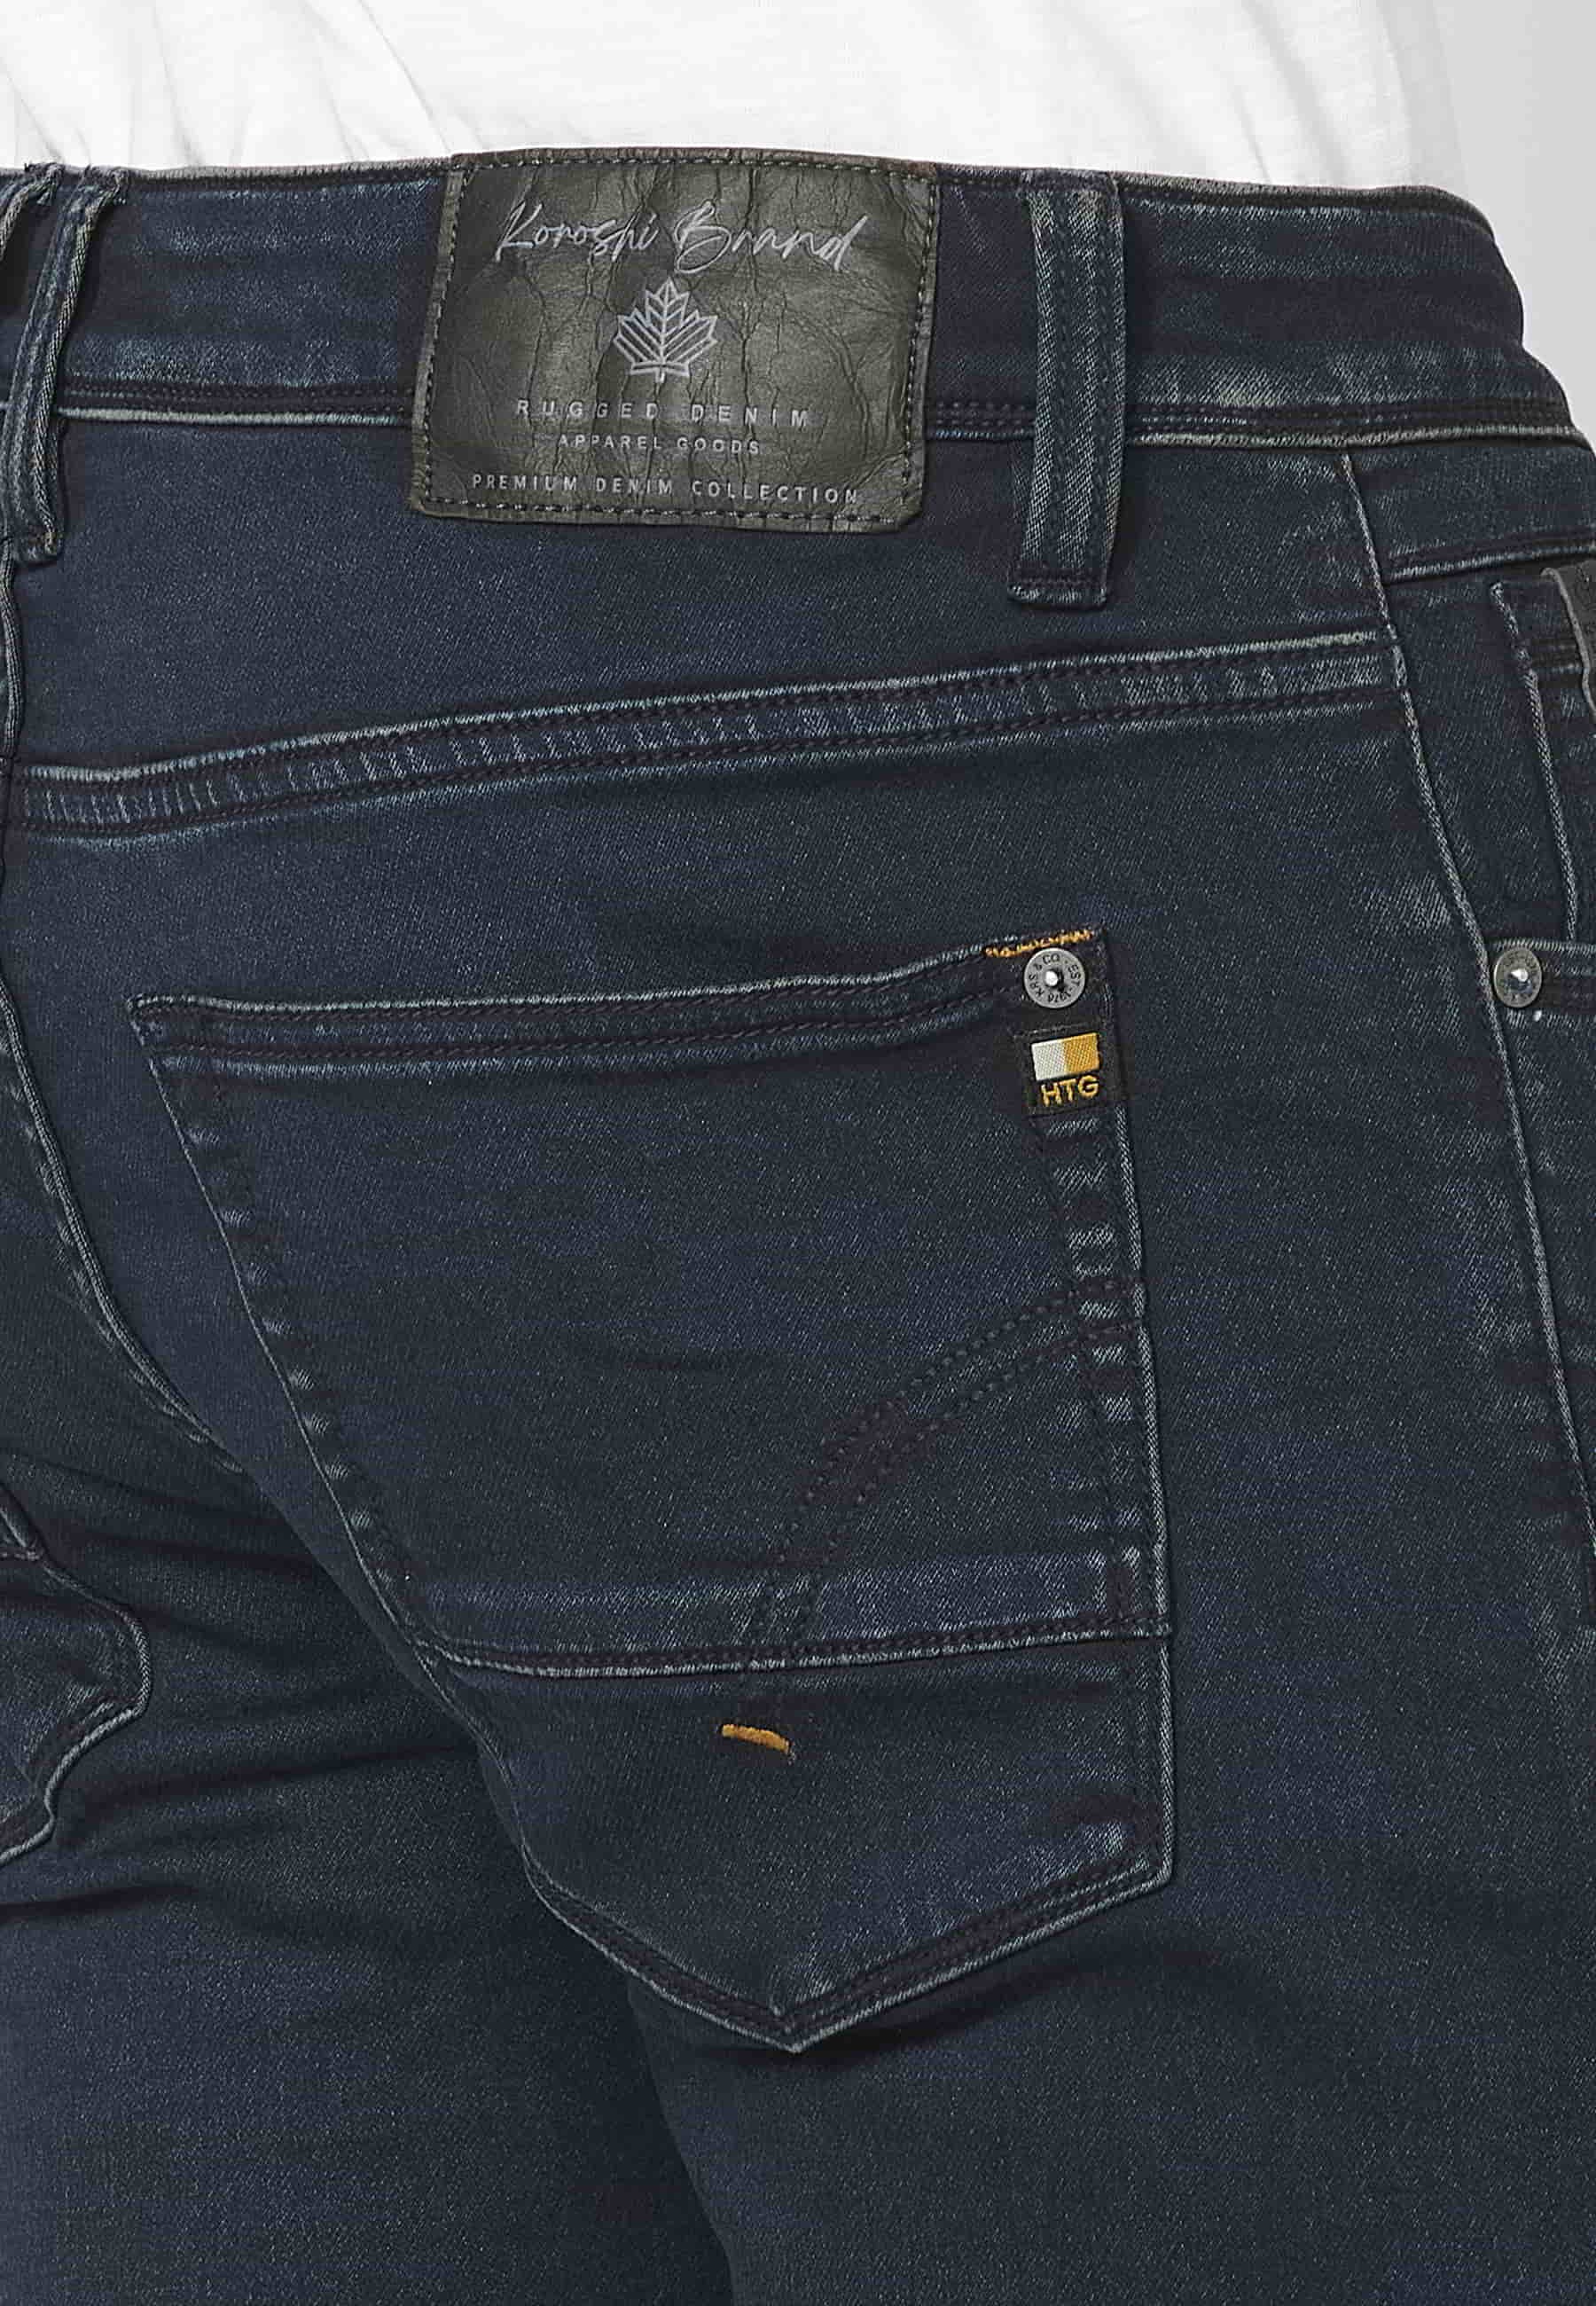 Pantalon Jean long coupe slim, couleur Bleu Foncé pour Homme 6